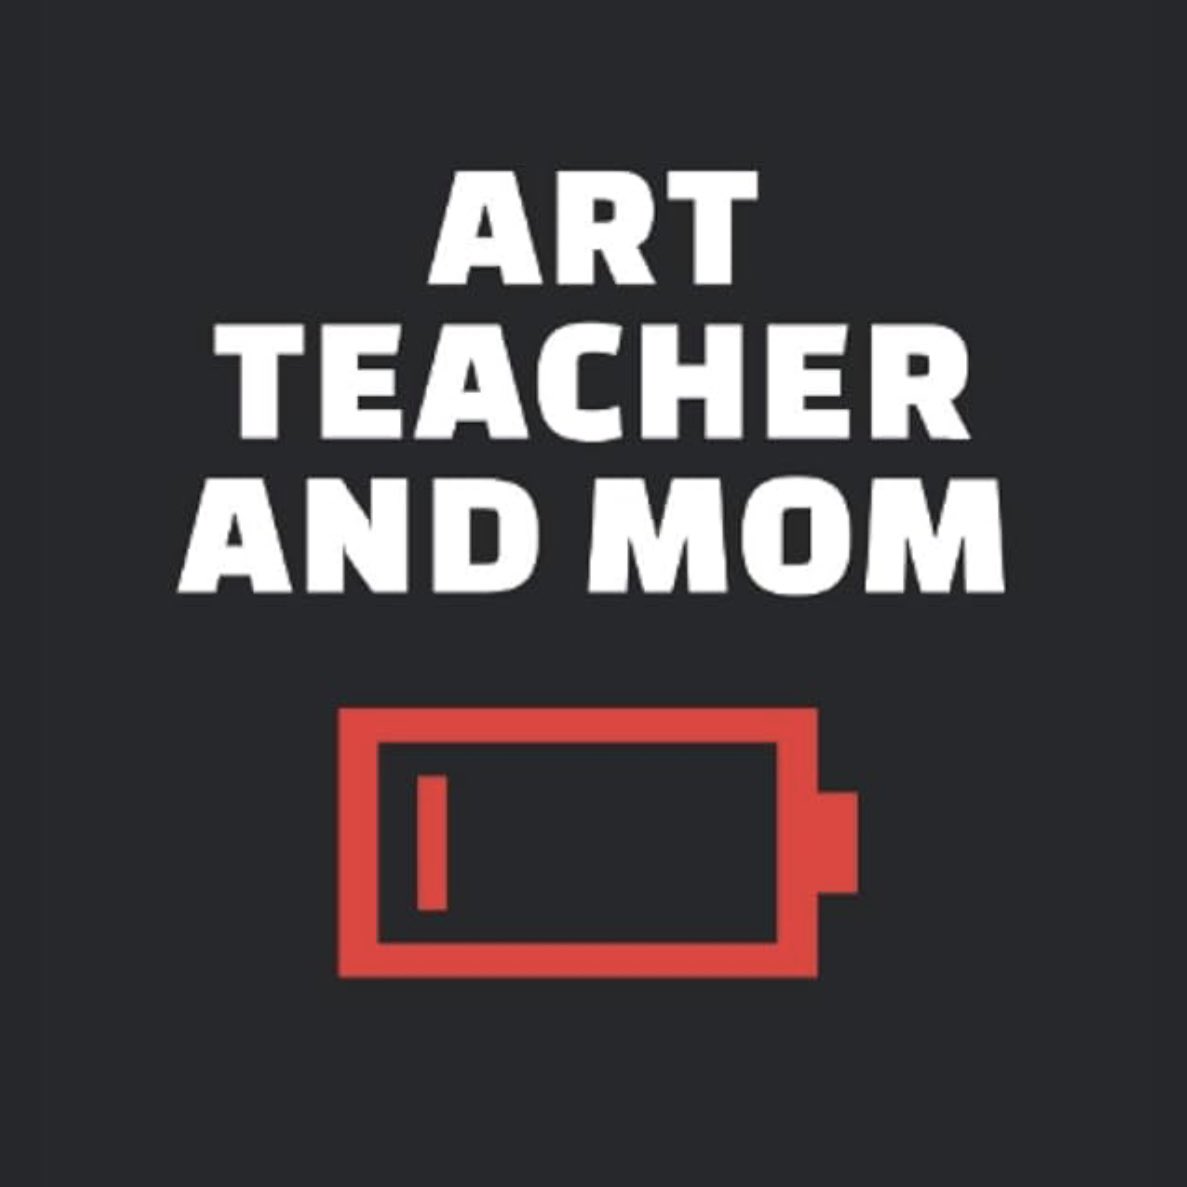 #mccraftyart #artteachermom #artteacher